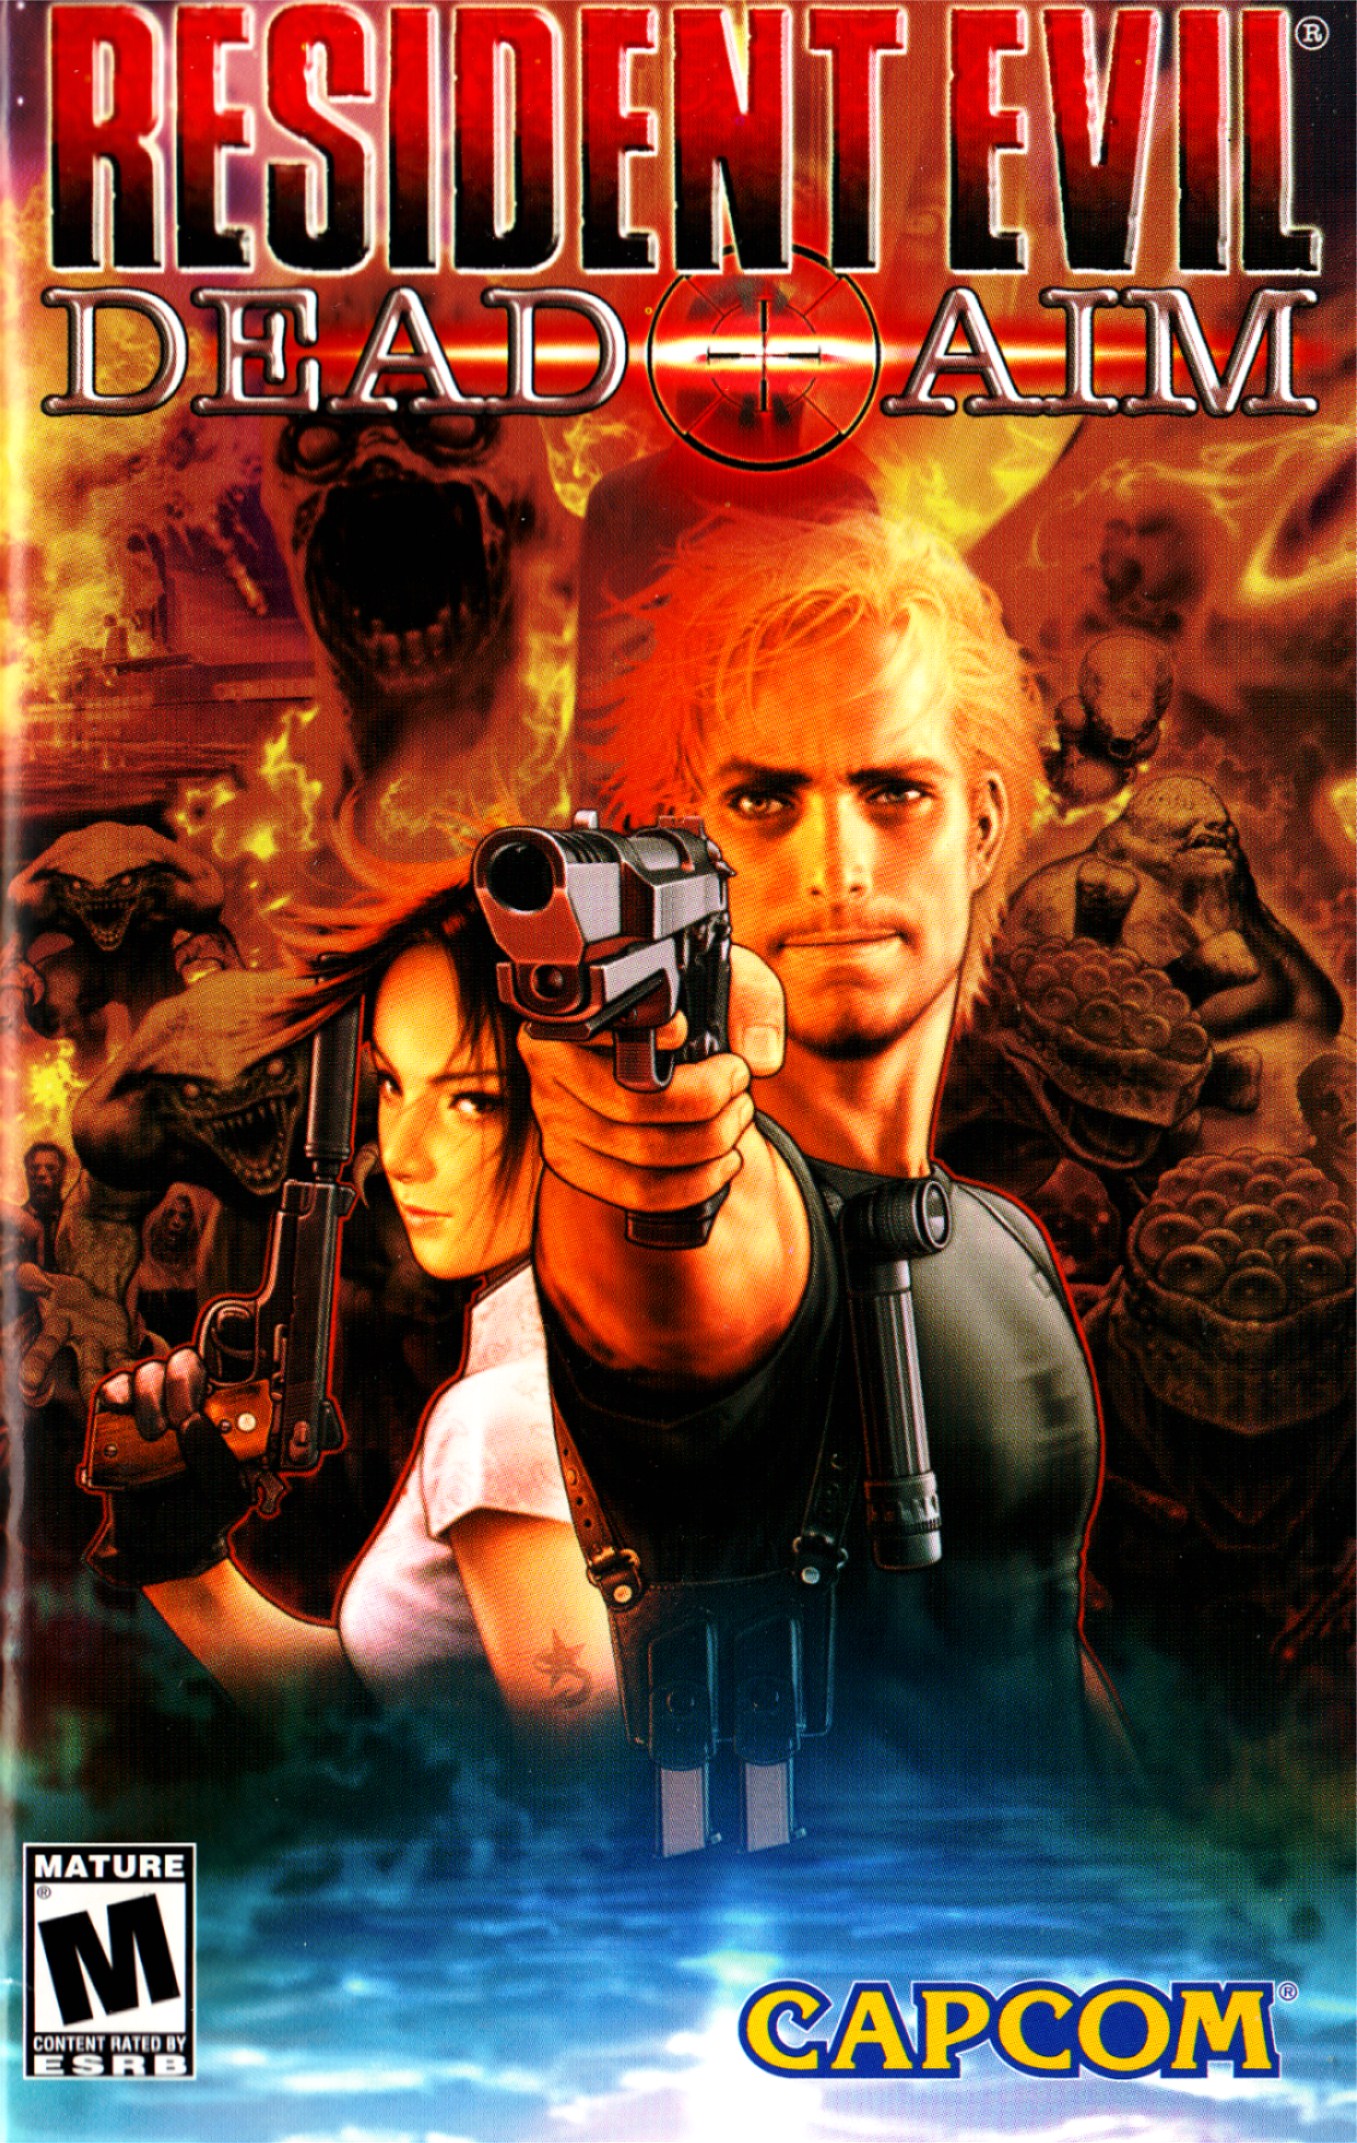 Resident Evil: Dead Aim #13